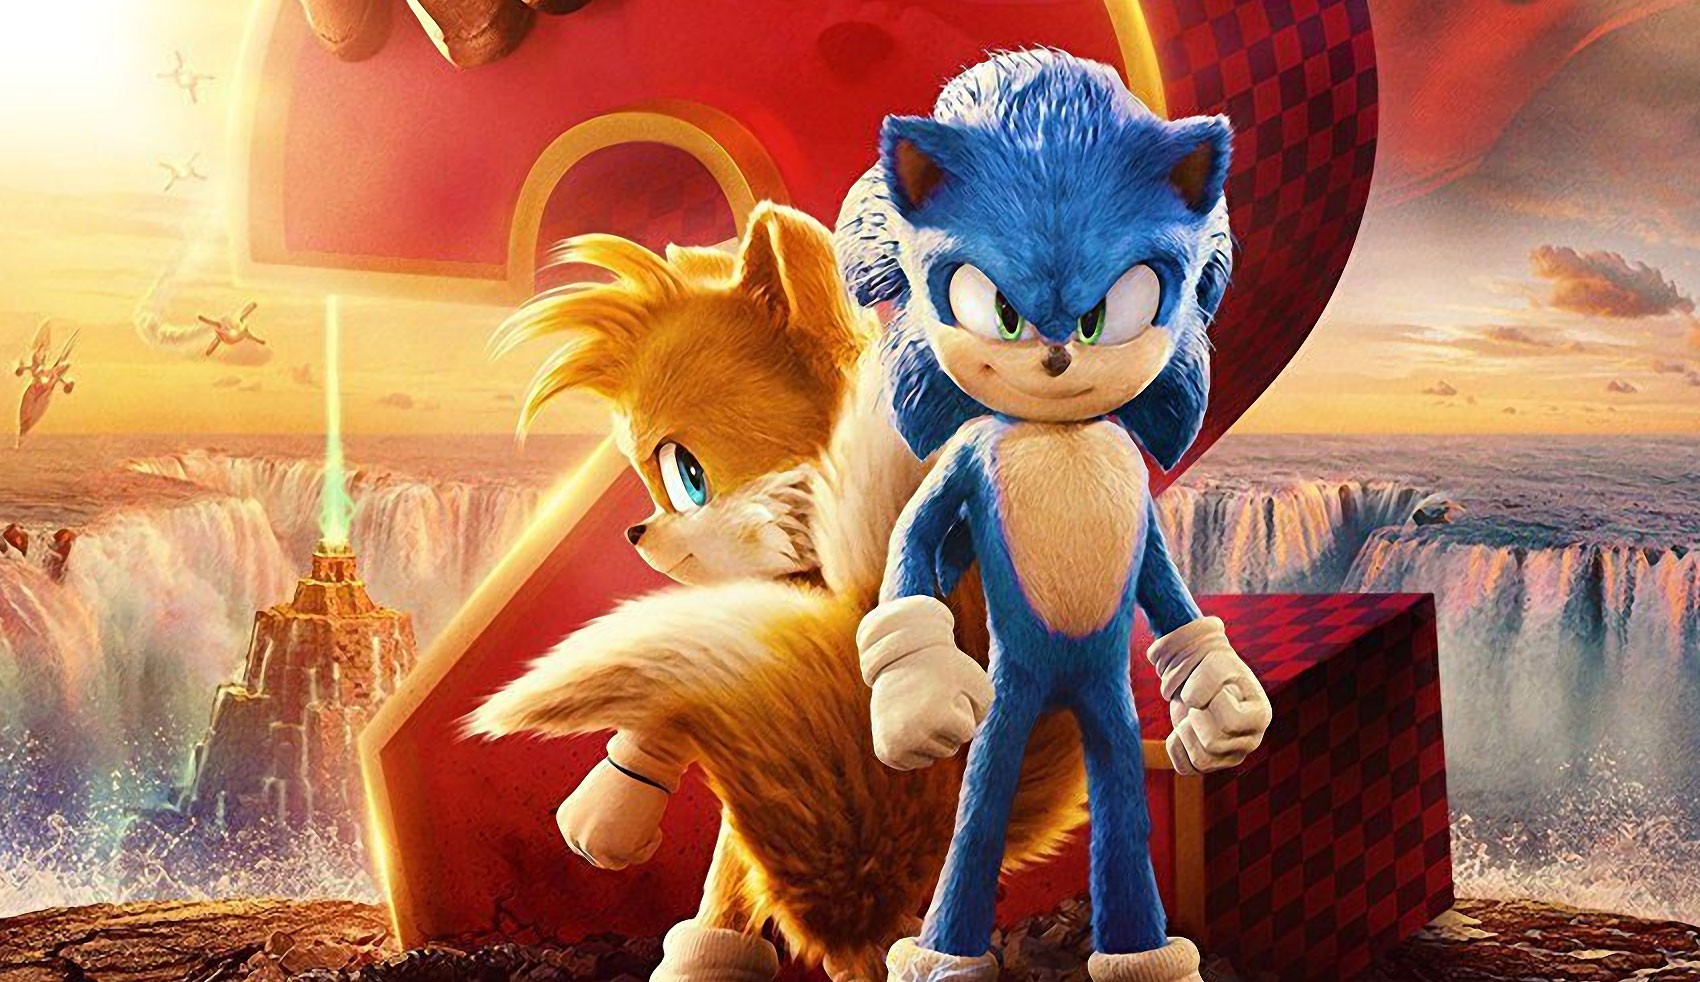 Filme do Sonic ganha primeiro trailer com Jim Carrey